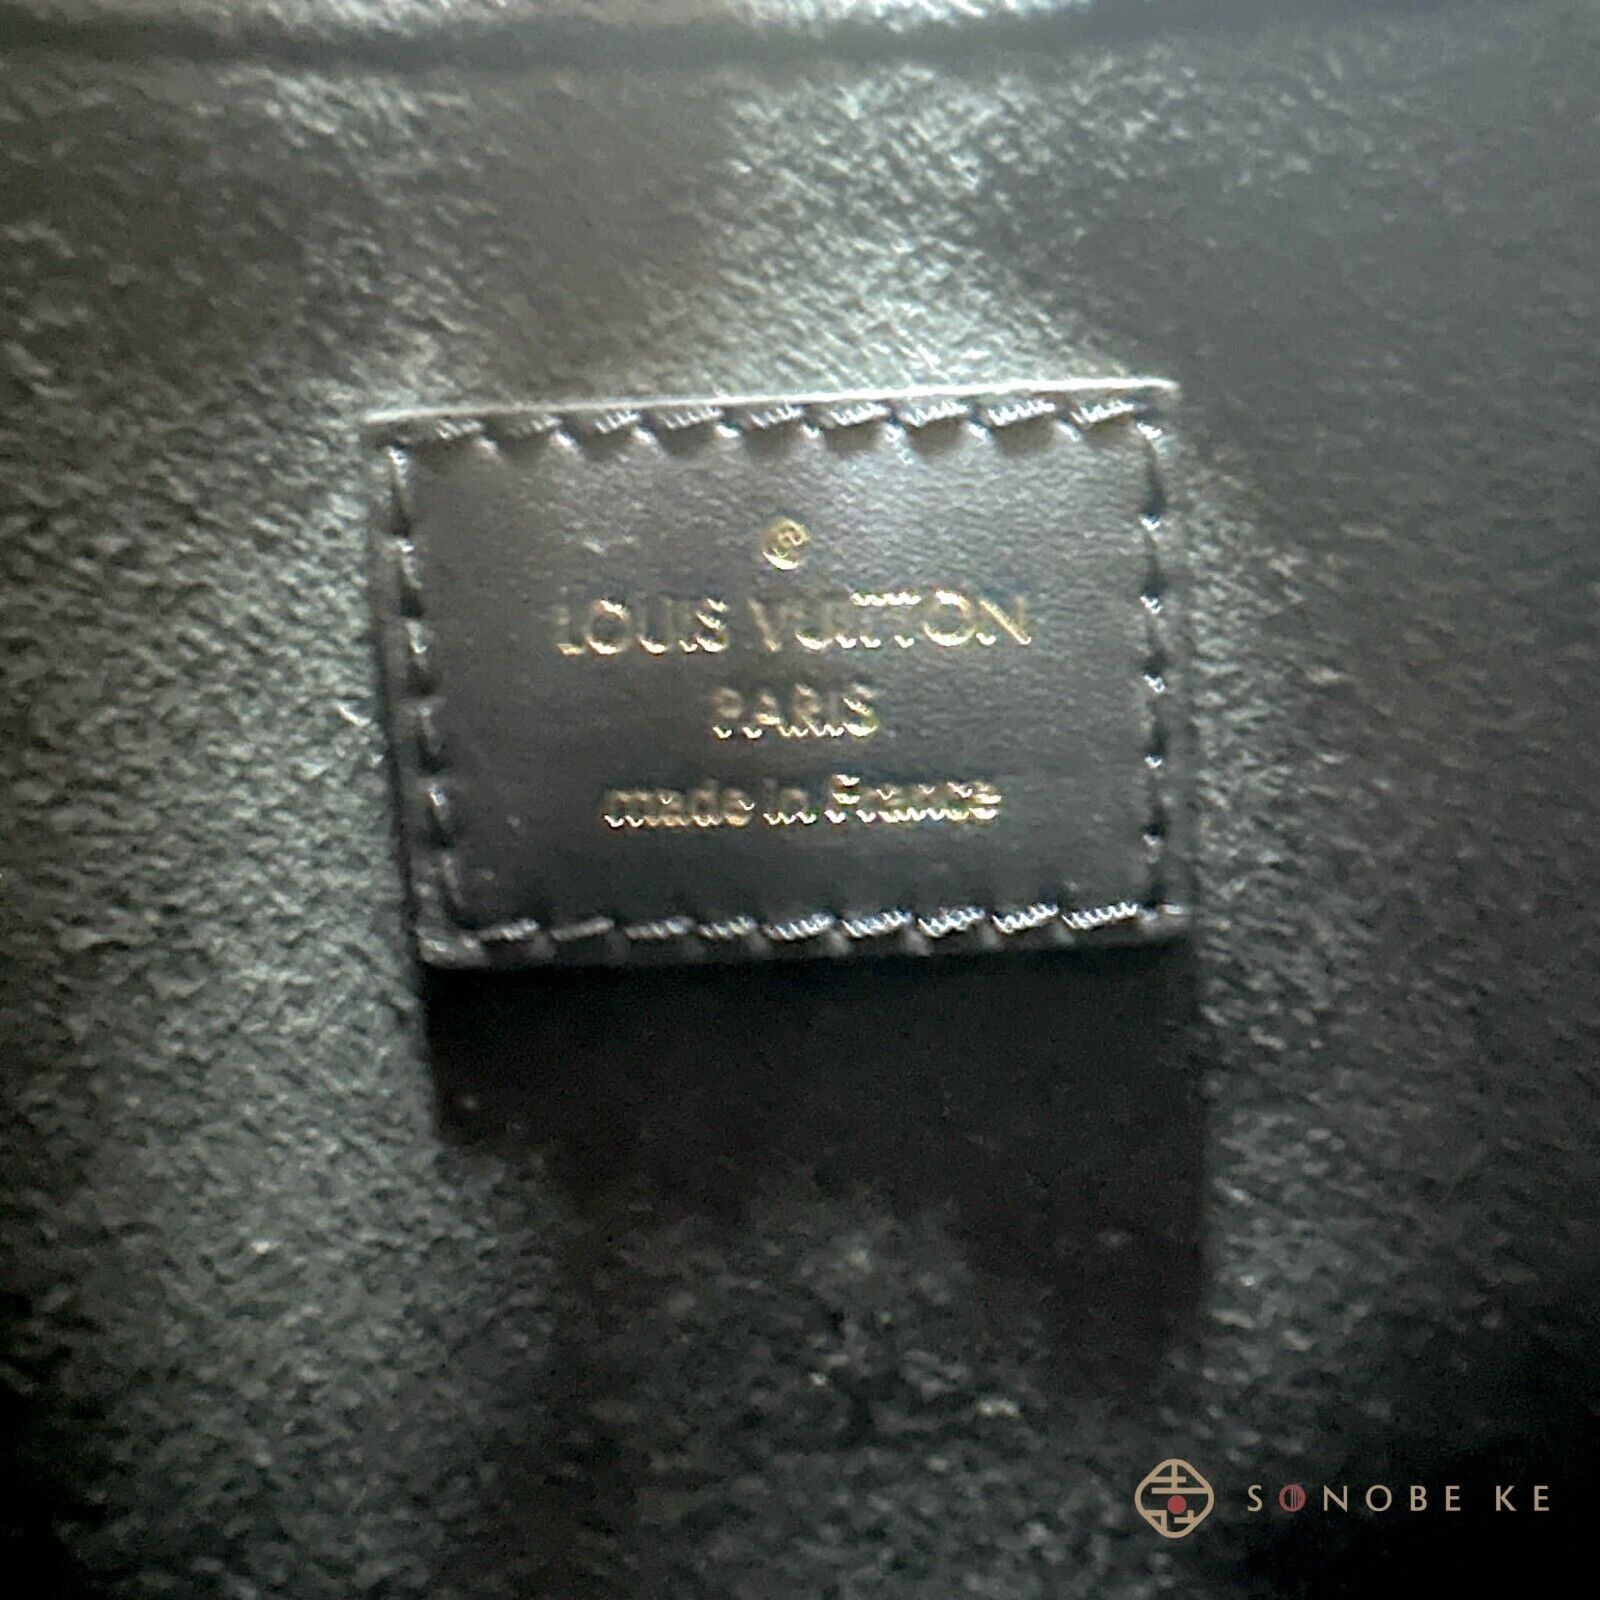 Louis Vuitton Monogram Empreinte on The Go PM M45653